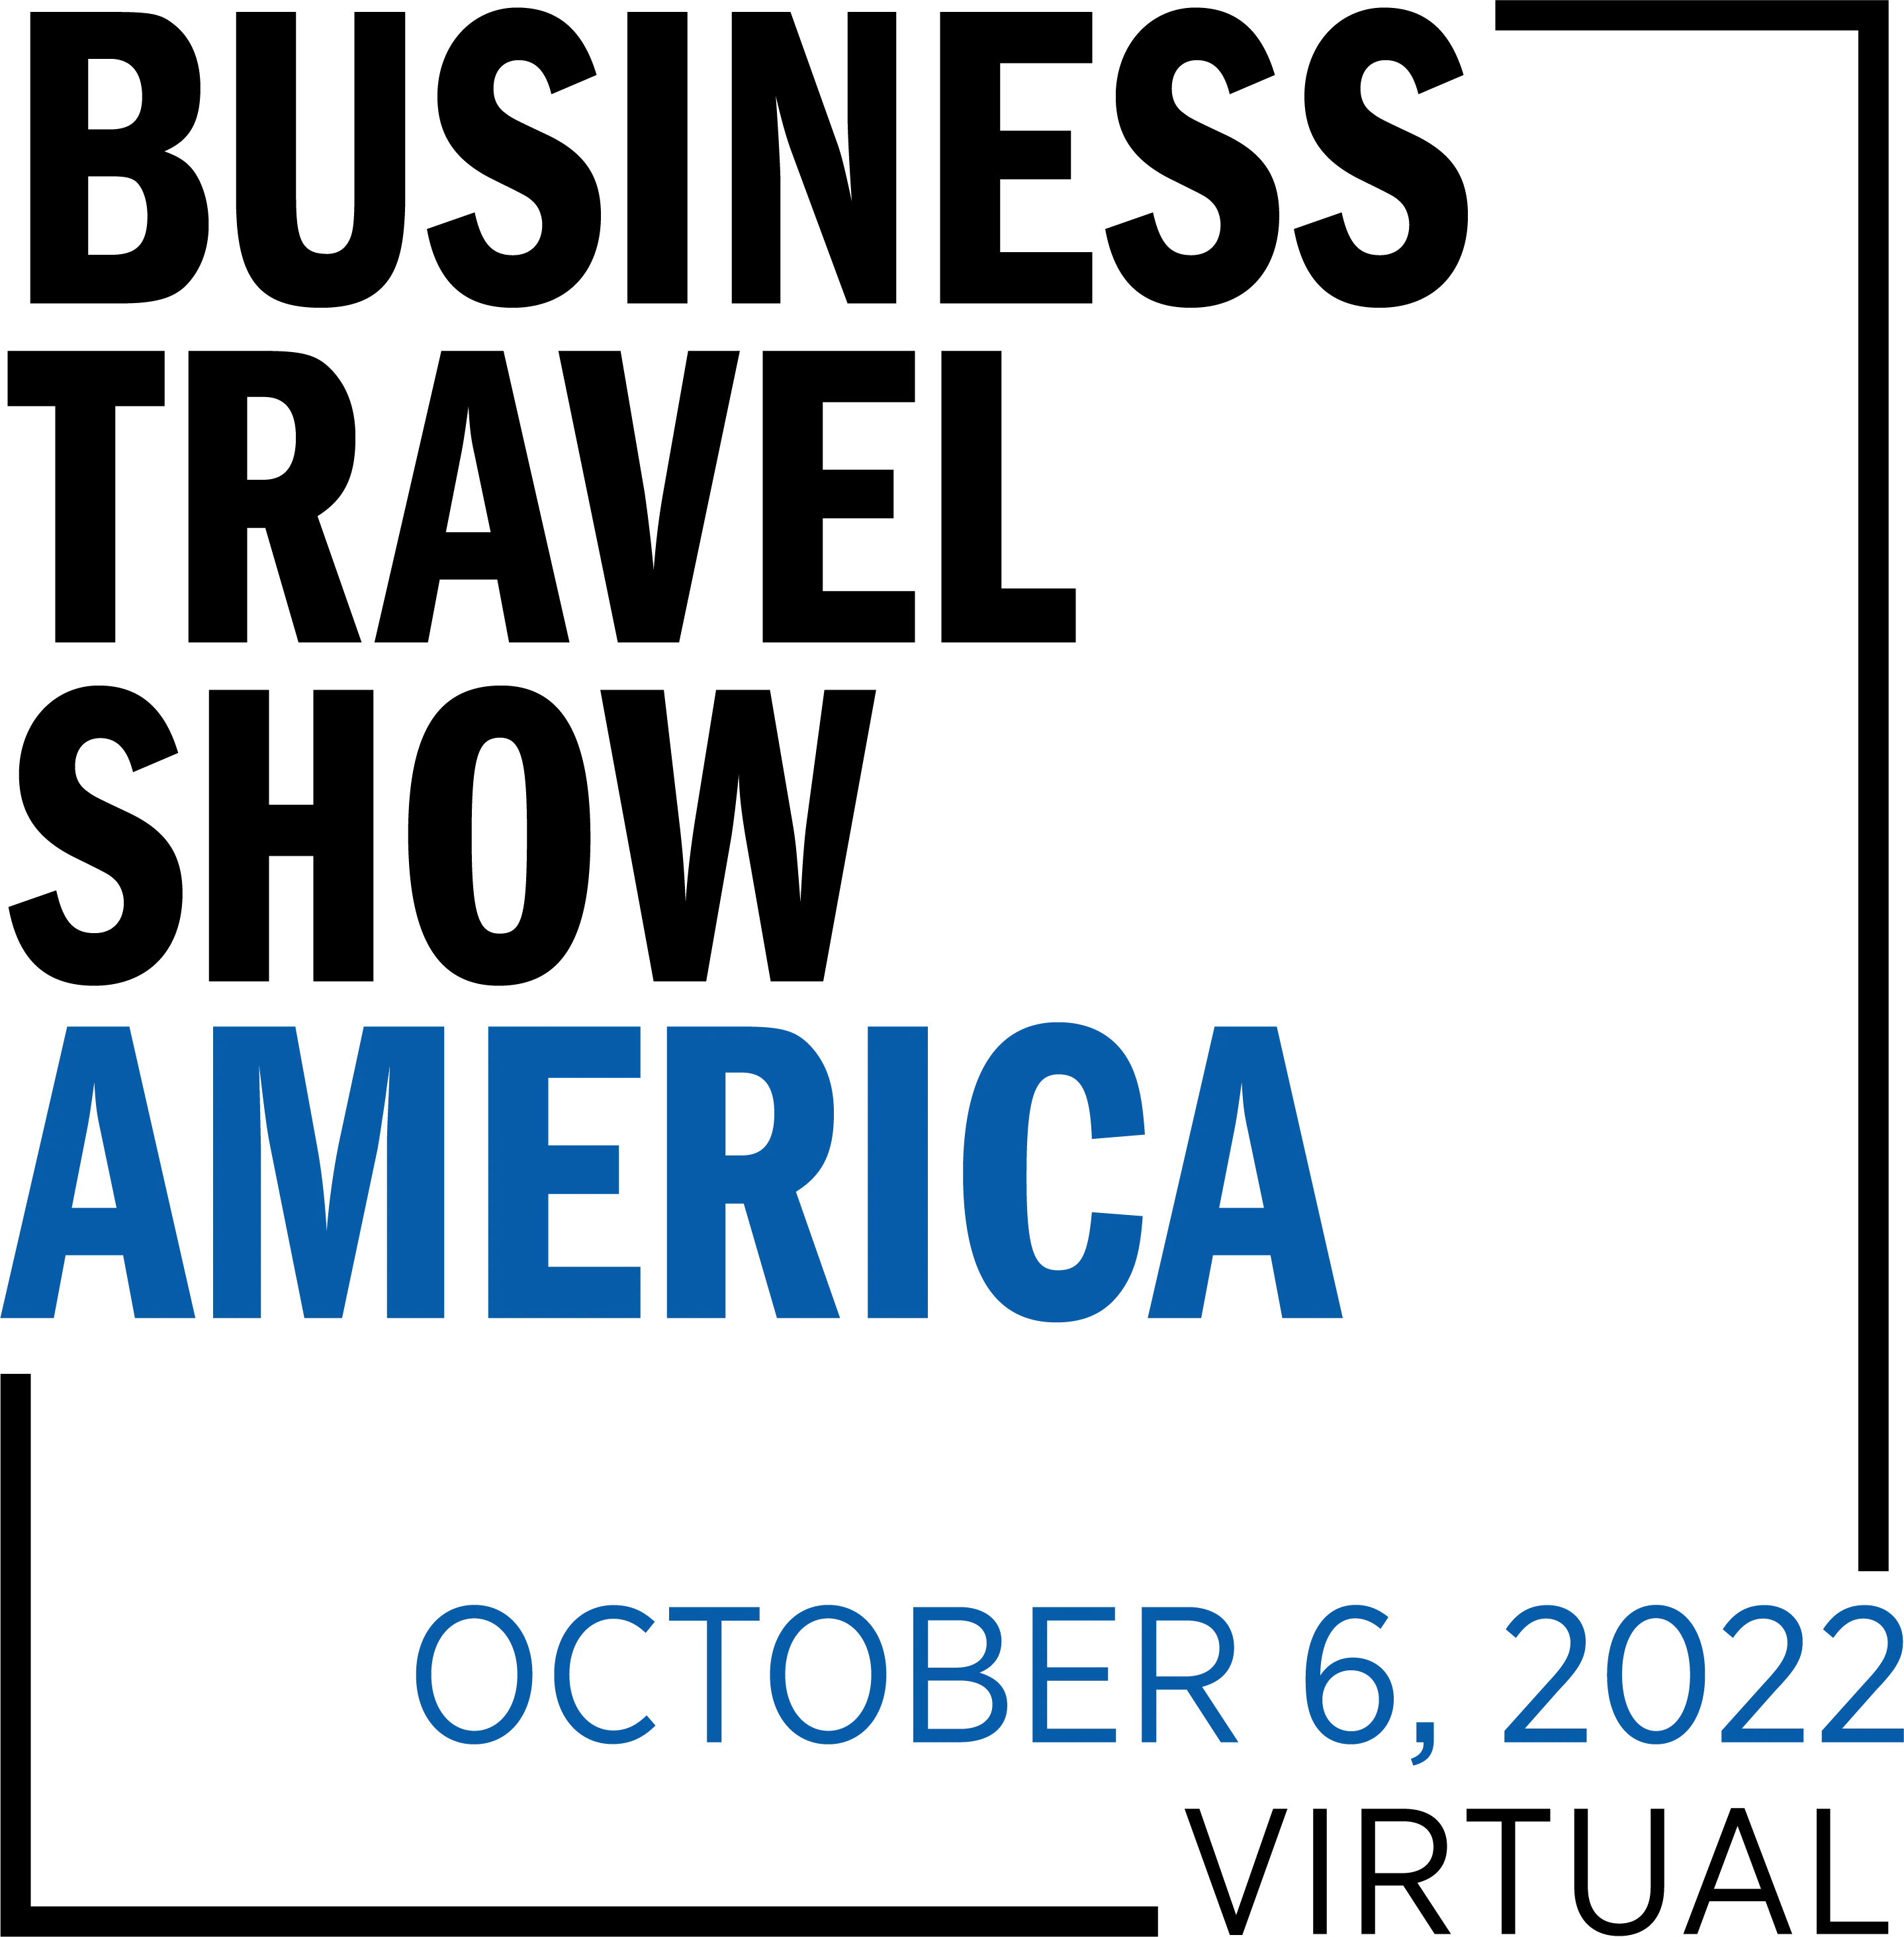 Business Travel Show America Logo